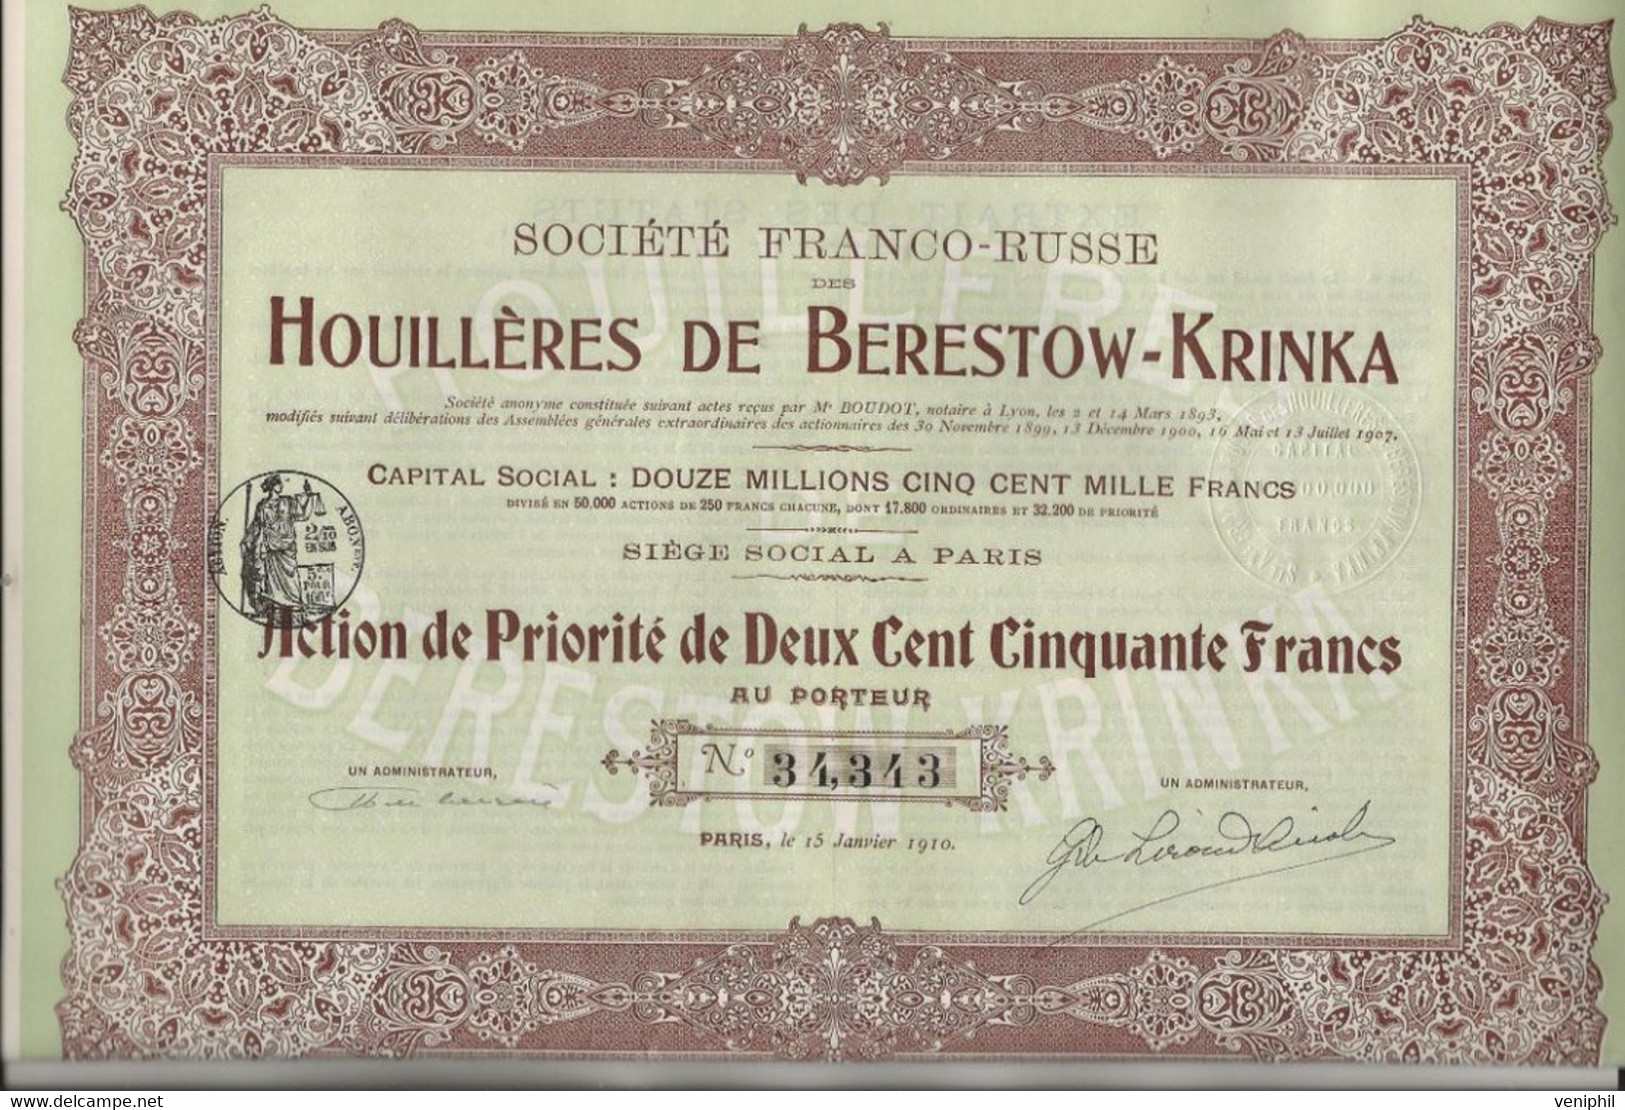 SOCIETE FRANCO -RUSSE DES HOUILLERES DE BERESTOW - KRINKA - LOT DE 3 ACTIONS DE PRIORITE DE 250 FRS -ANNEE 1910 - Mijnen